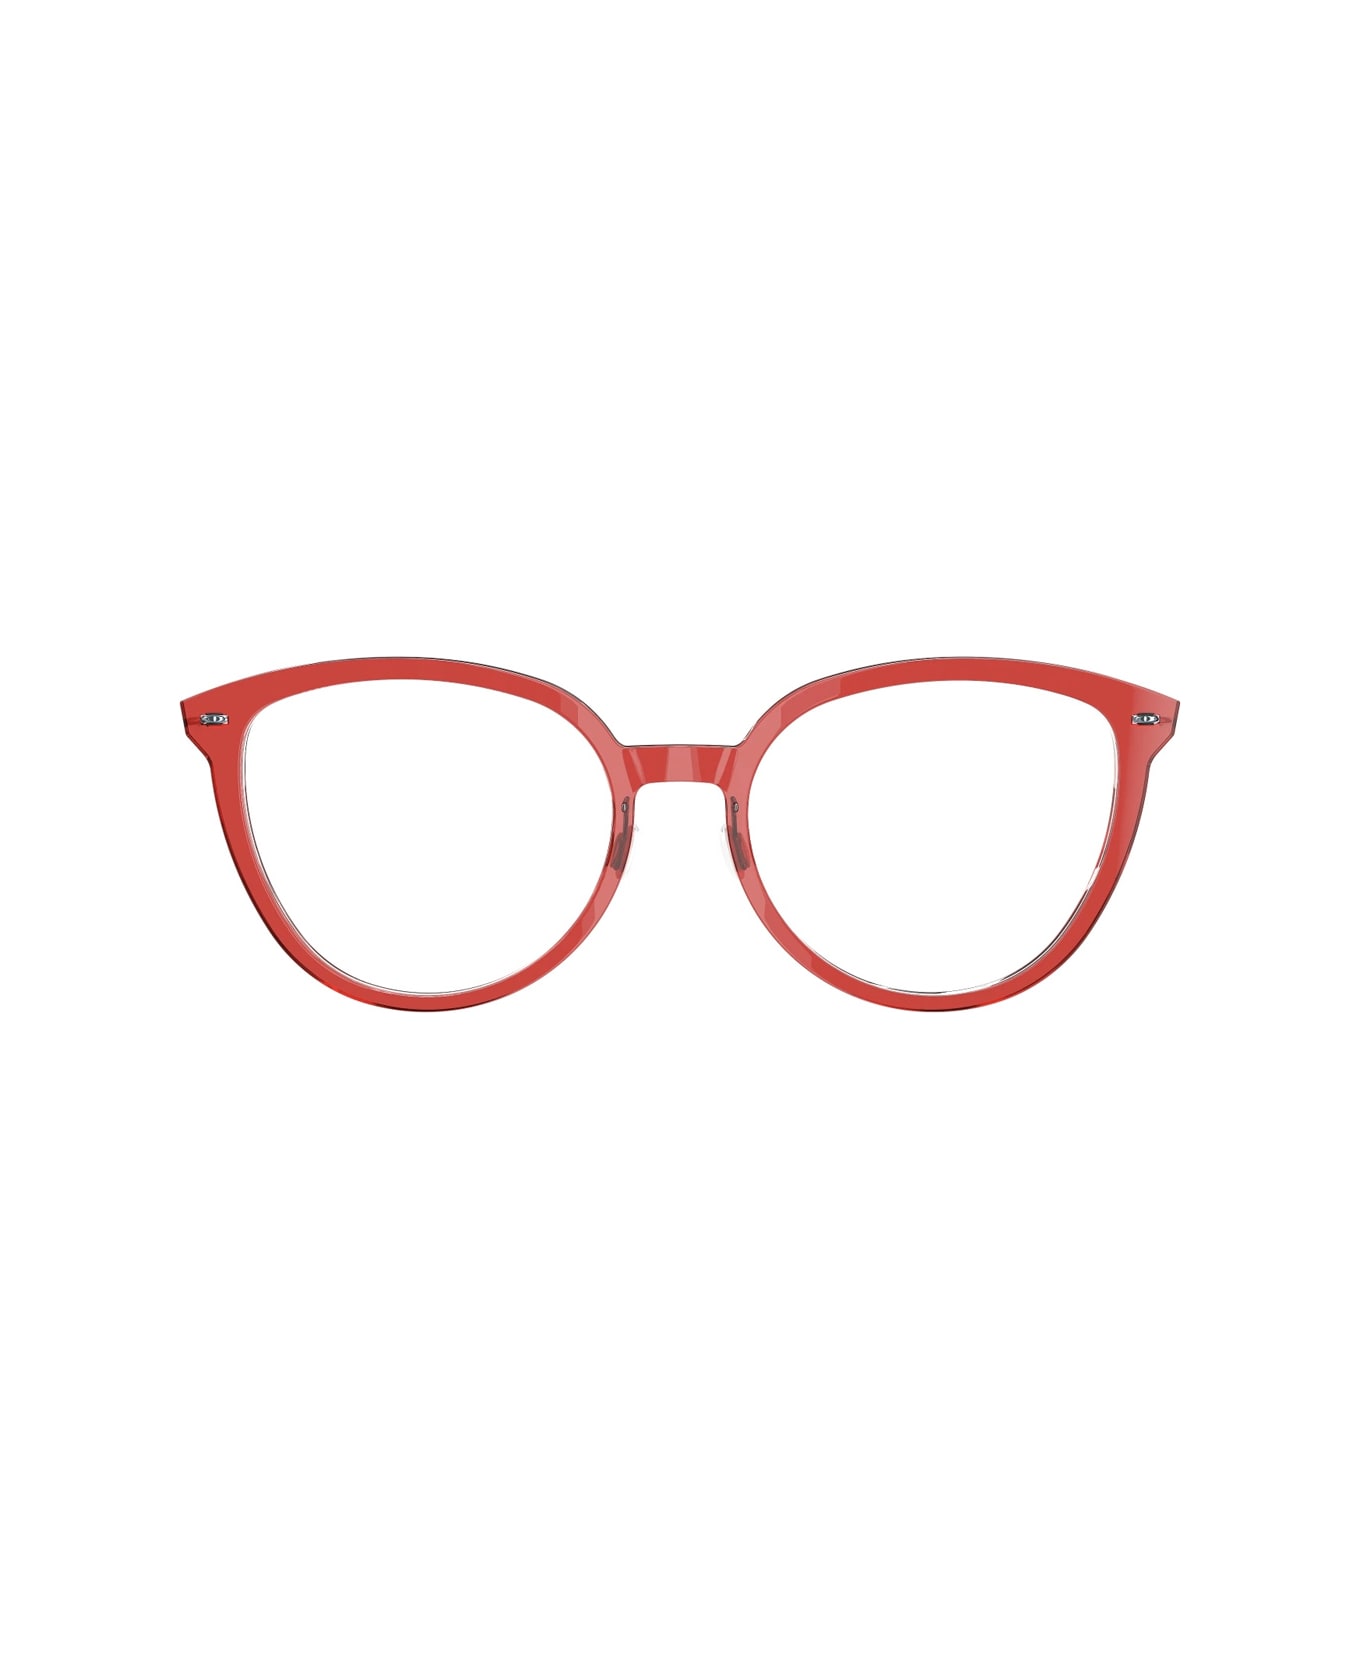 LINDBERG N.o.w. 6618 C18m - P25 Glasses - Rosso